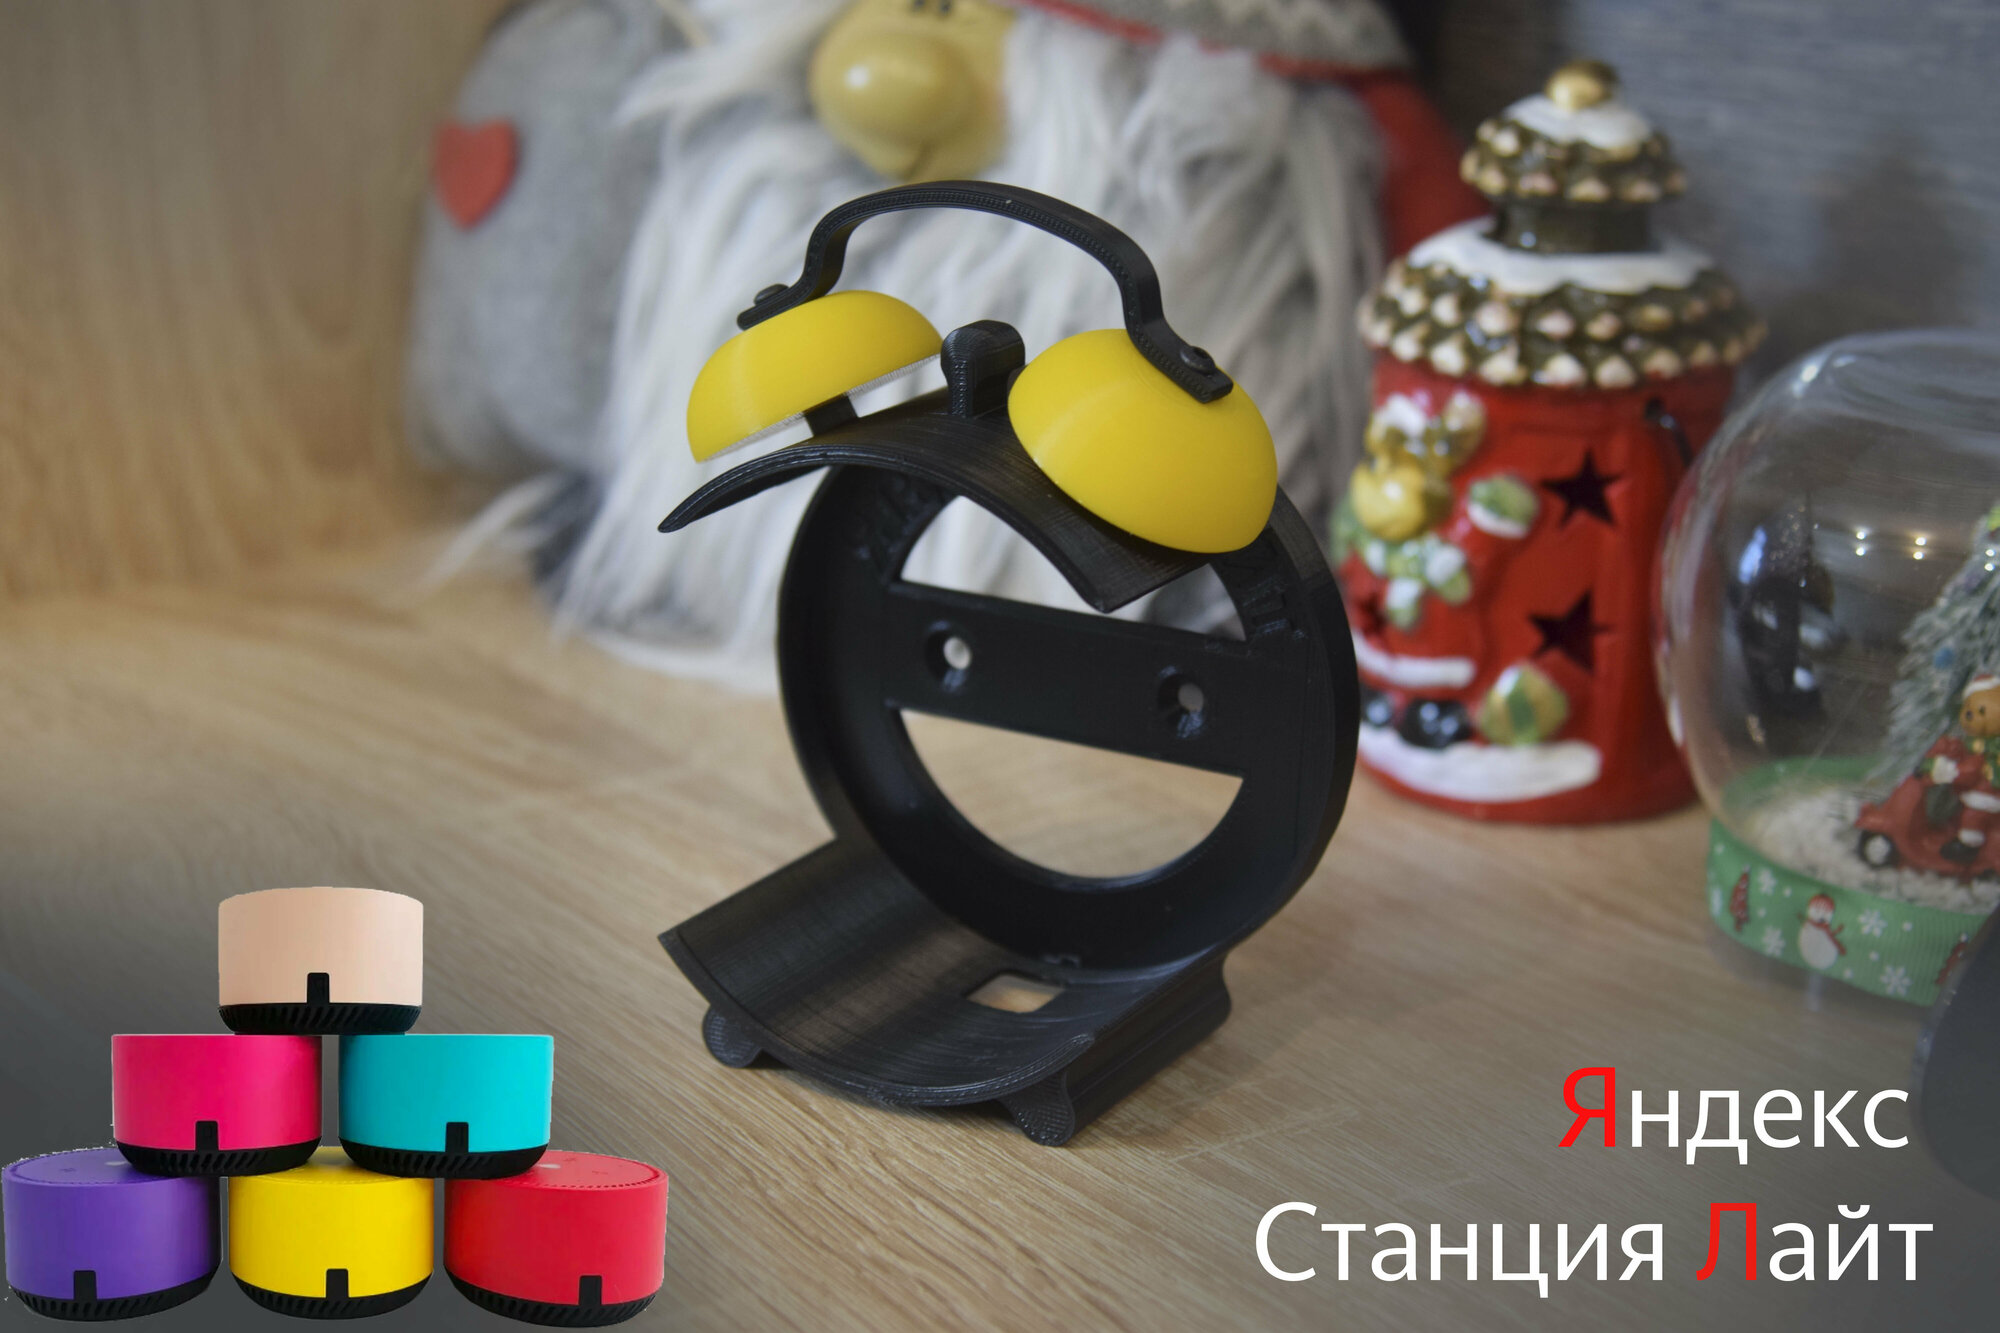 Подставка для Яндекс Cтанции Лайт (черная с желтым)